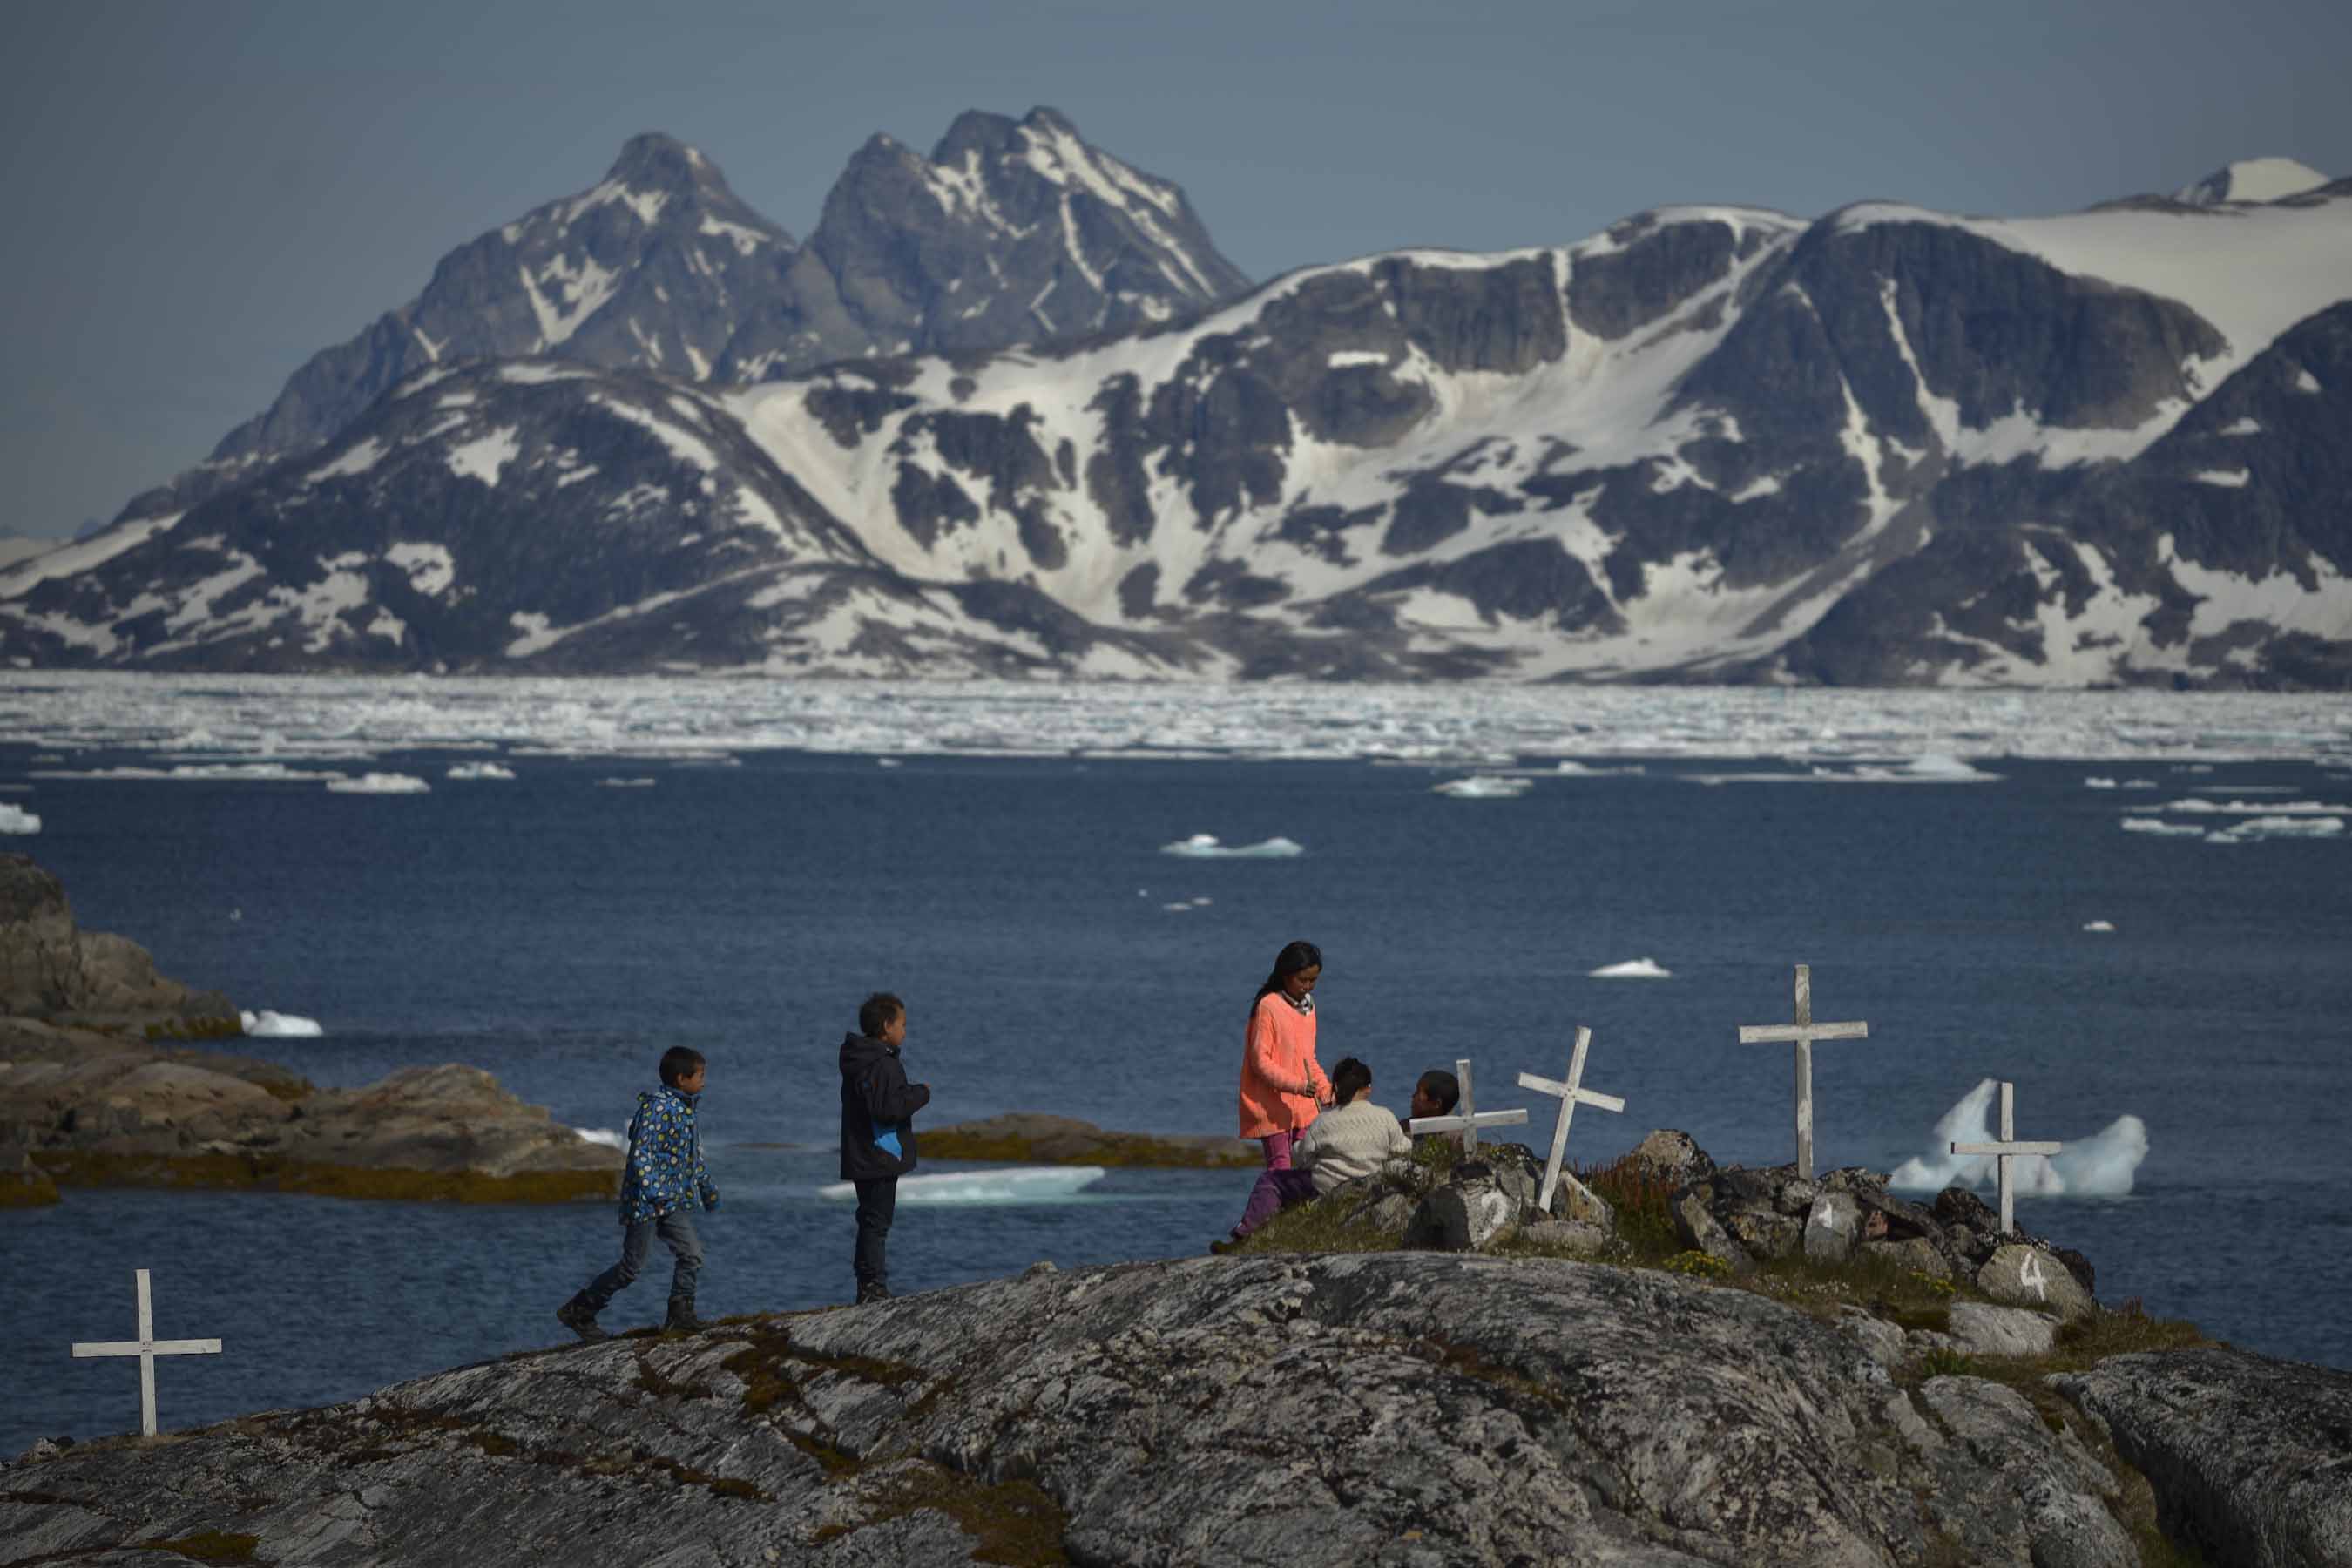 Los inuits son los habitantes locales de estas tierras árticas, cuyo modo de vida se ve amenazado por los proyectos petrolíferos en la zona.